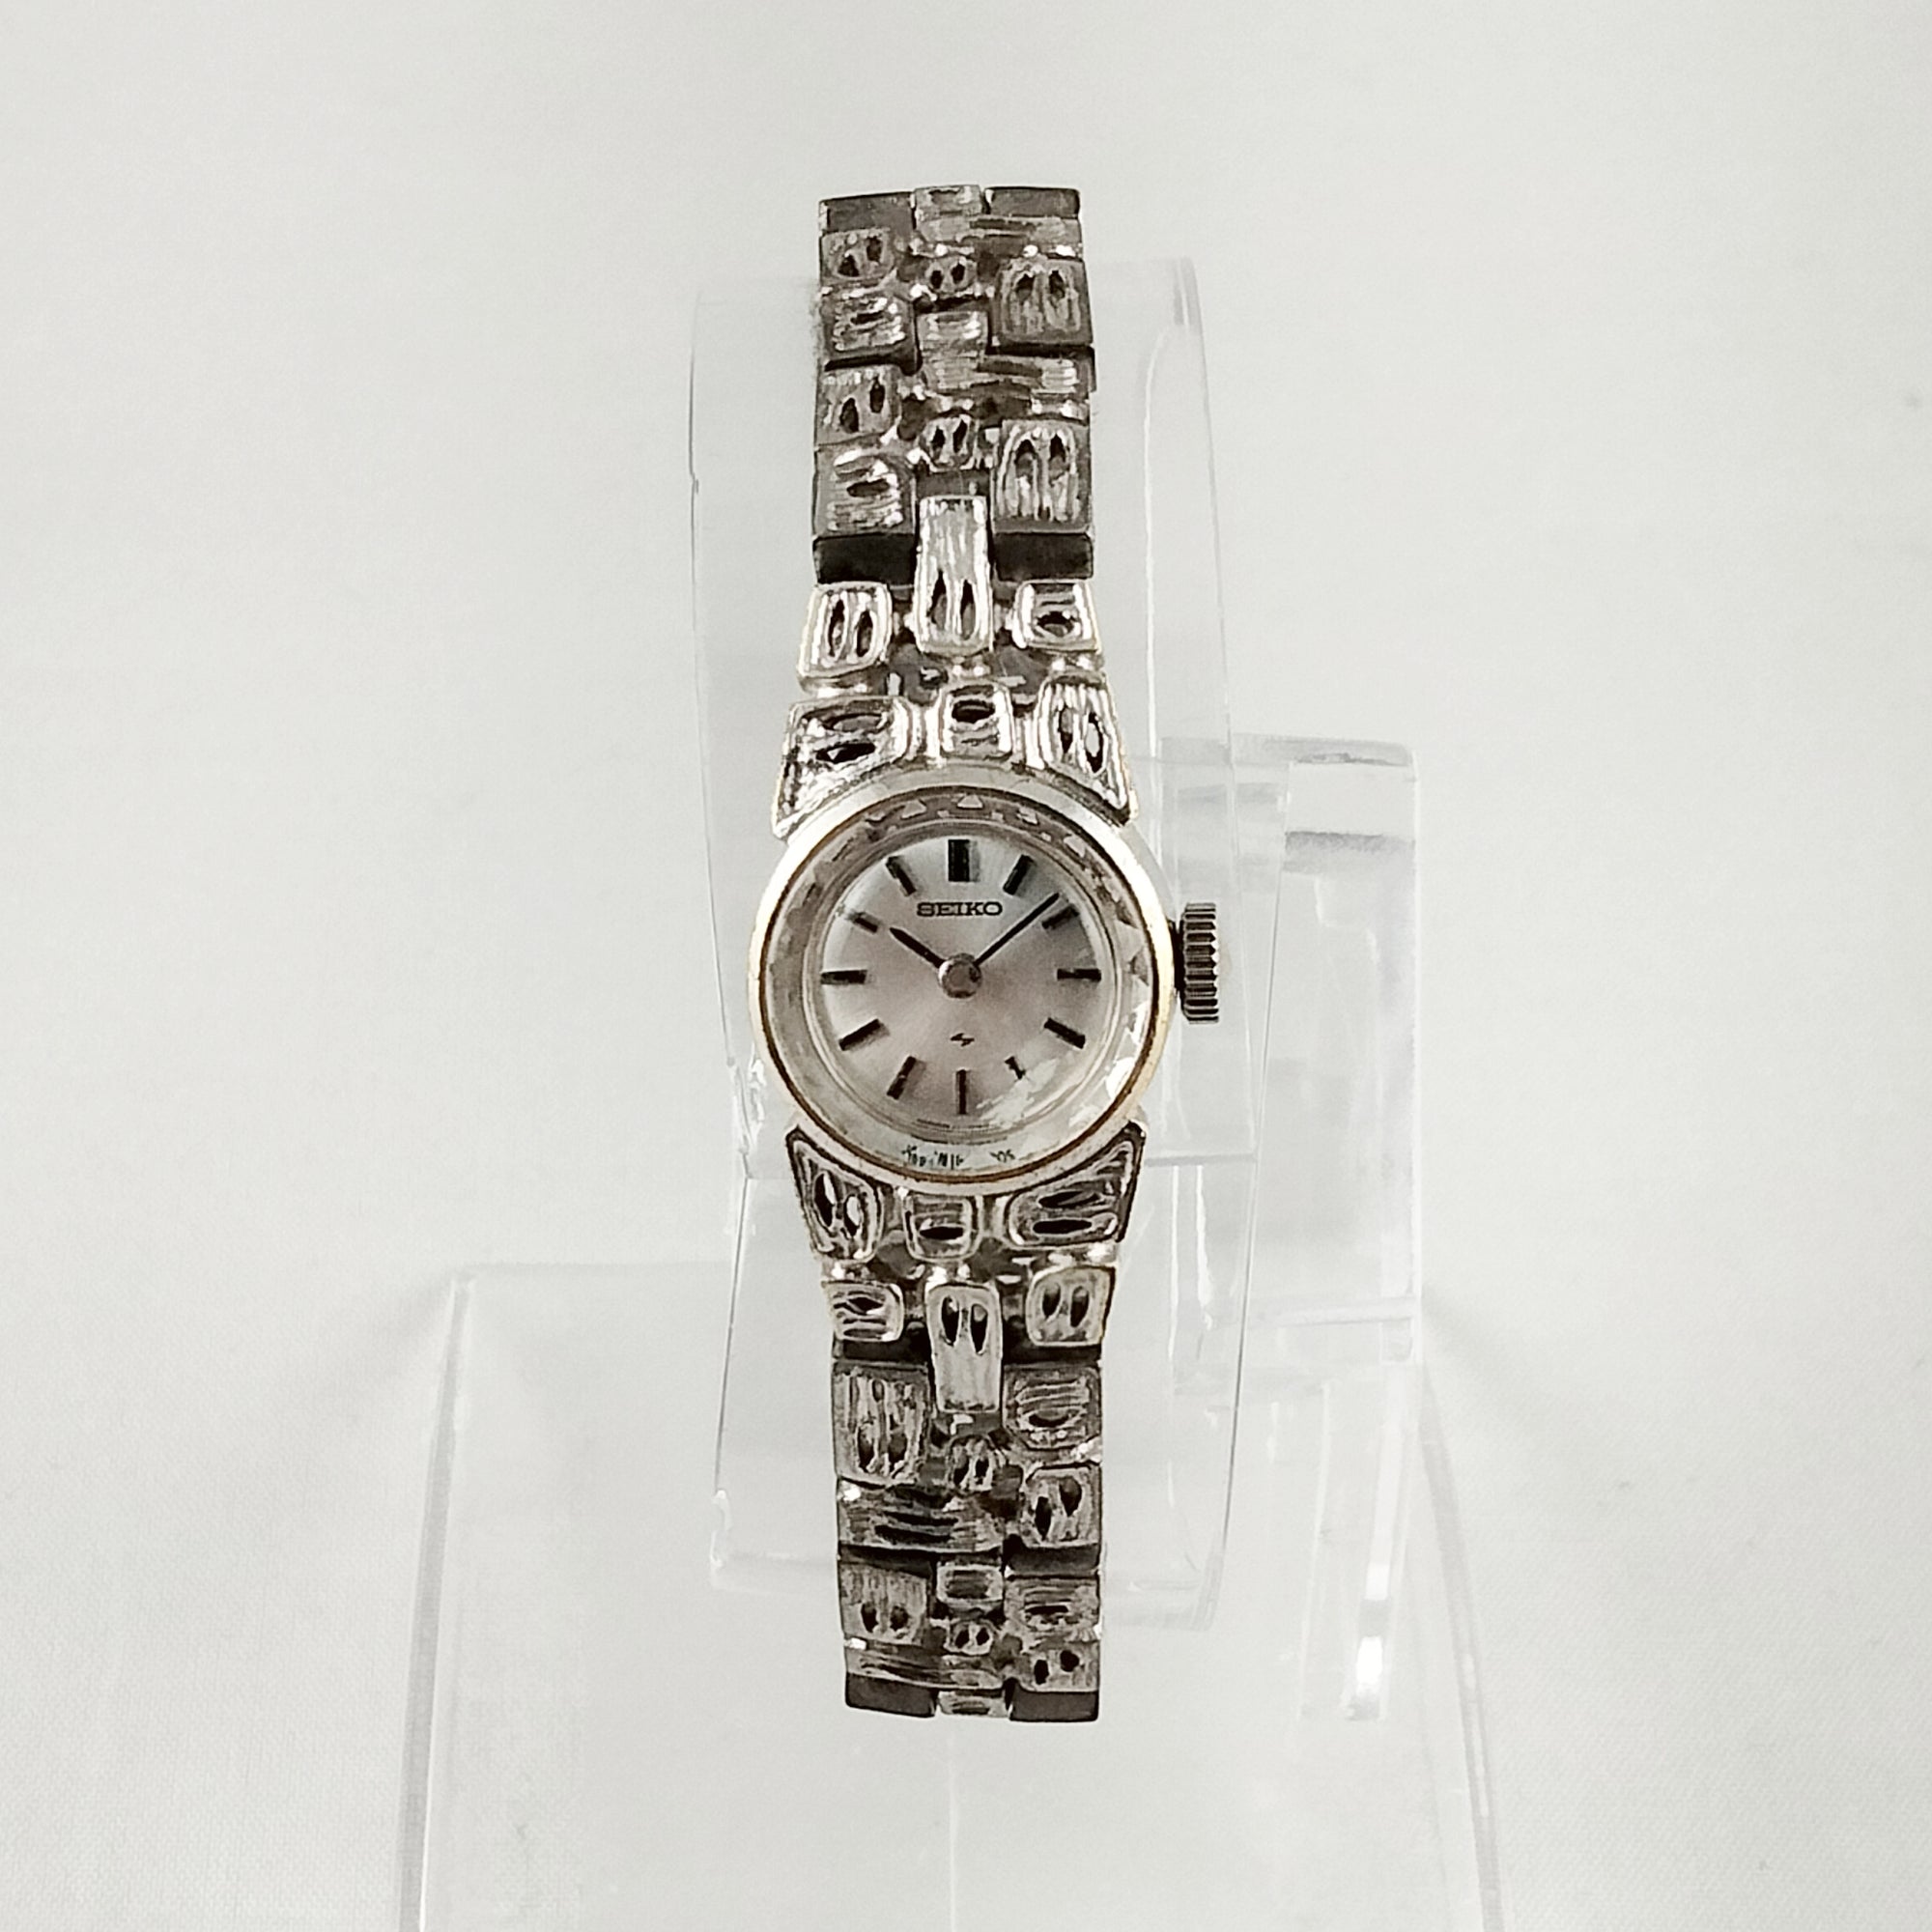 Seiko Women's Petite Silver Tone Watch, Faceted Details, Unique Bracelet Strap